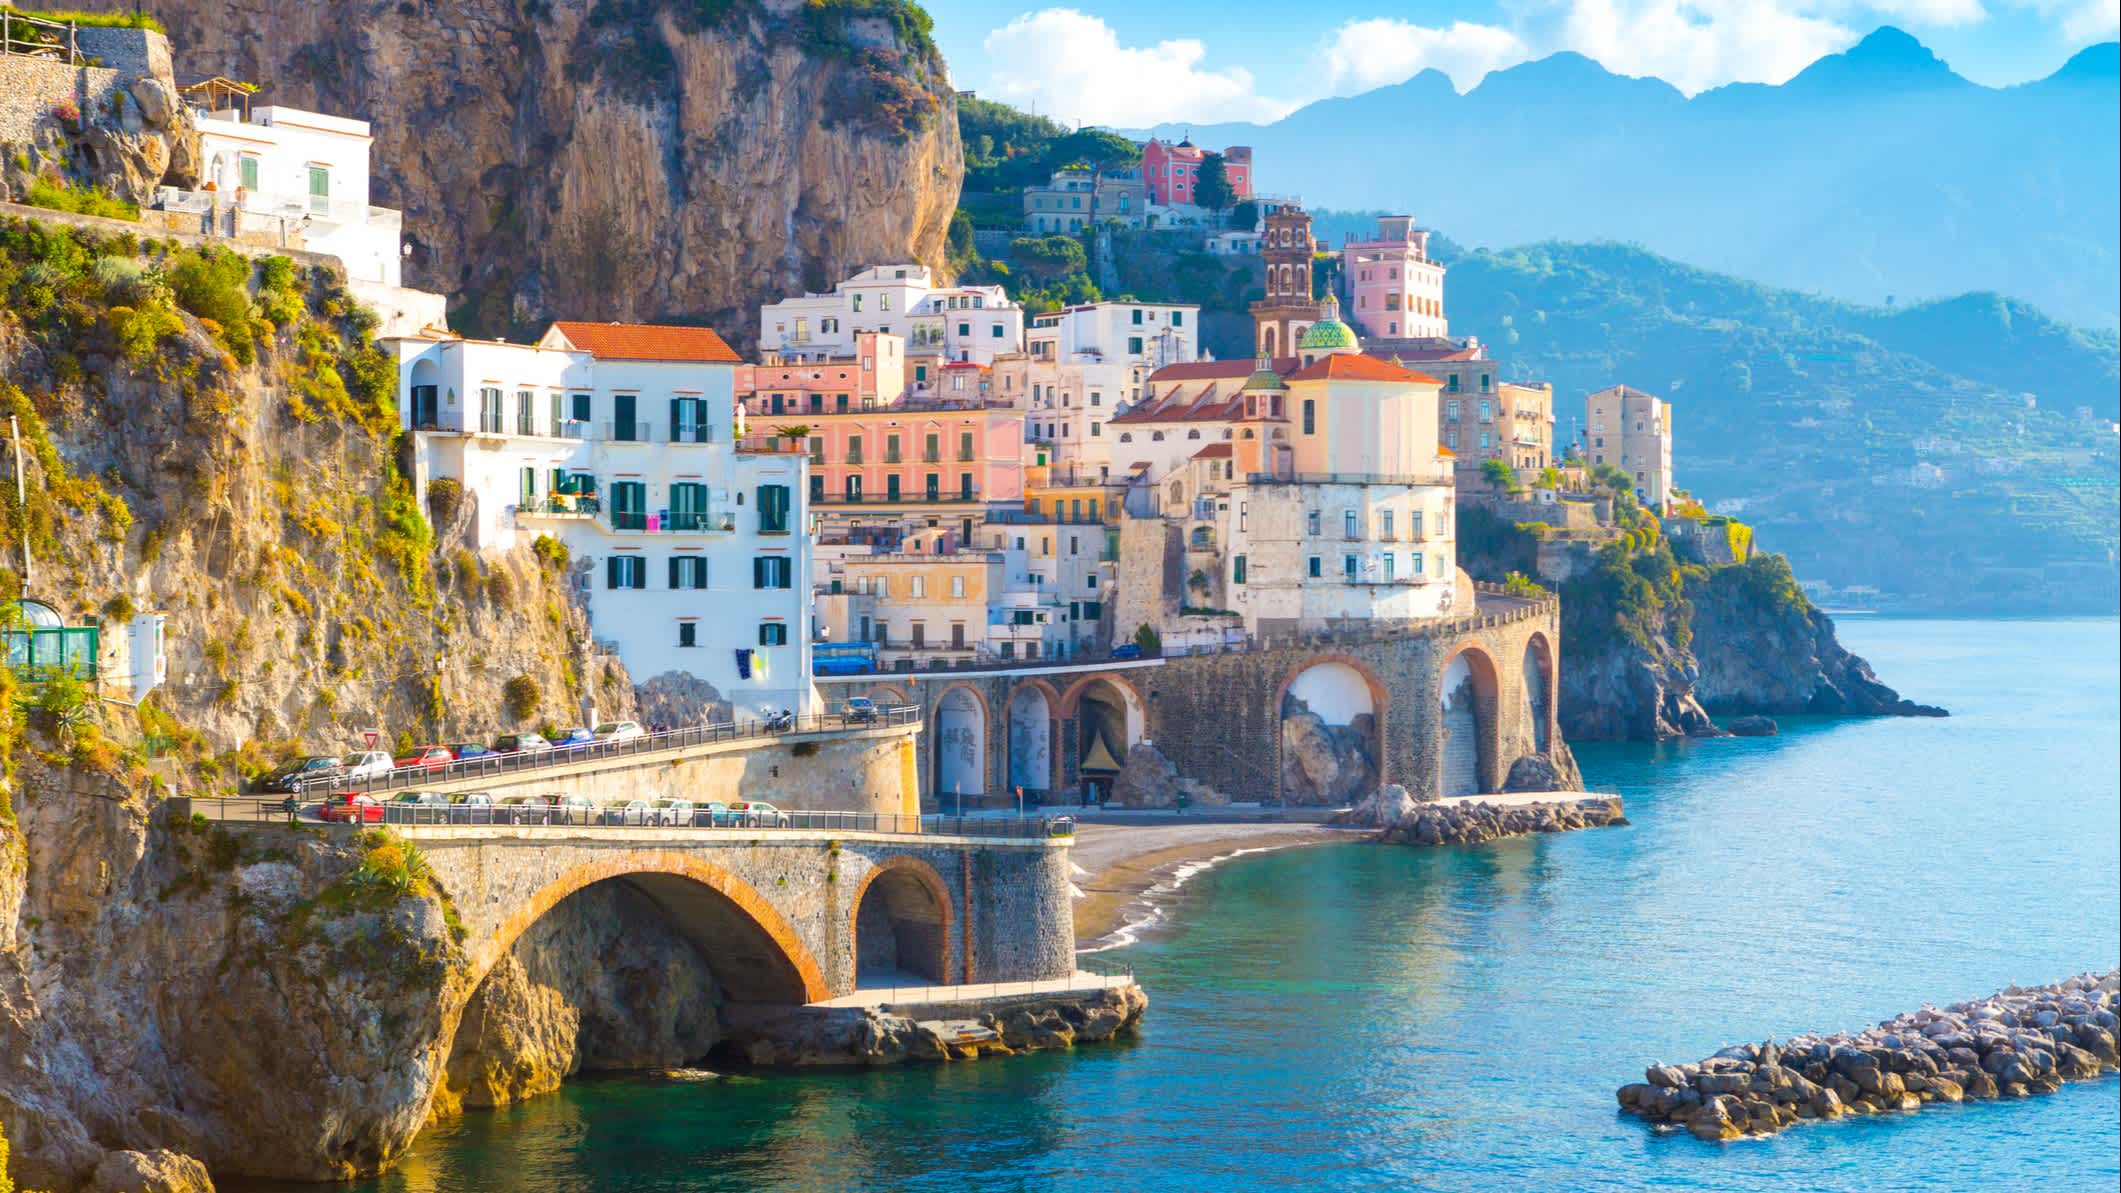 Vue panoramique sur la côte d'Amalfitaine en Italie.